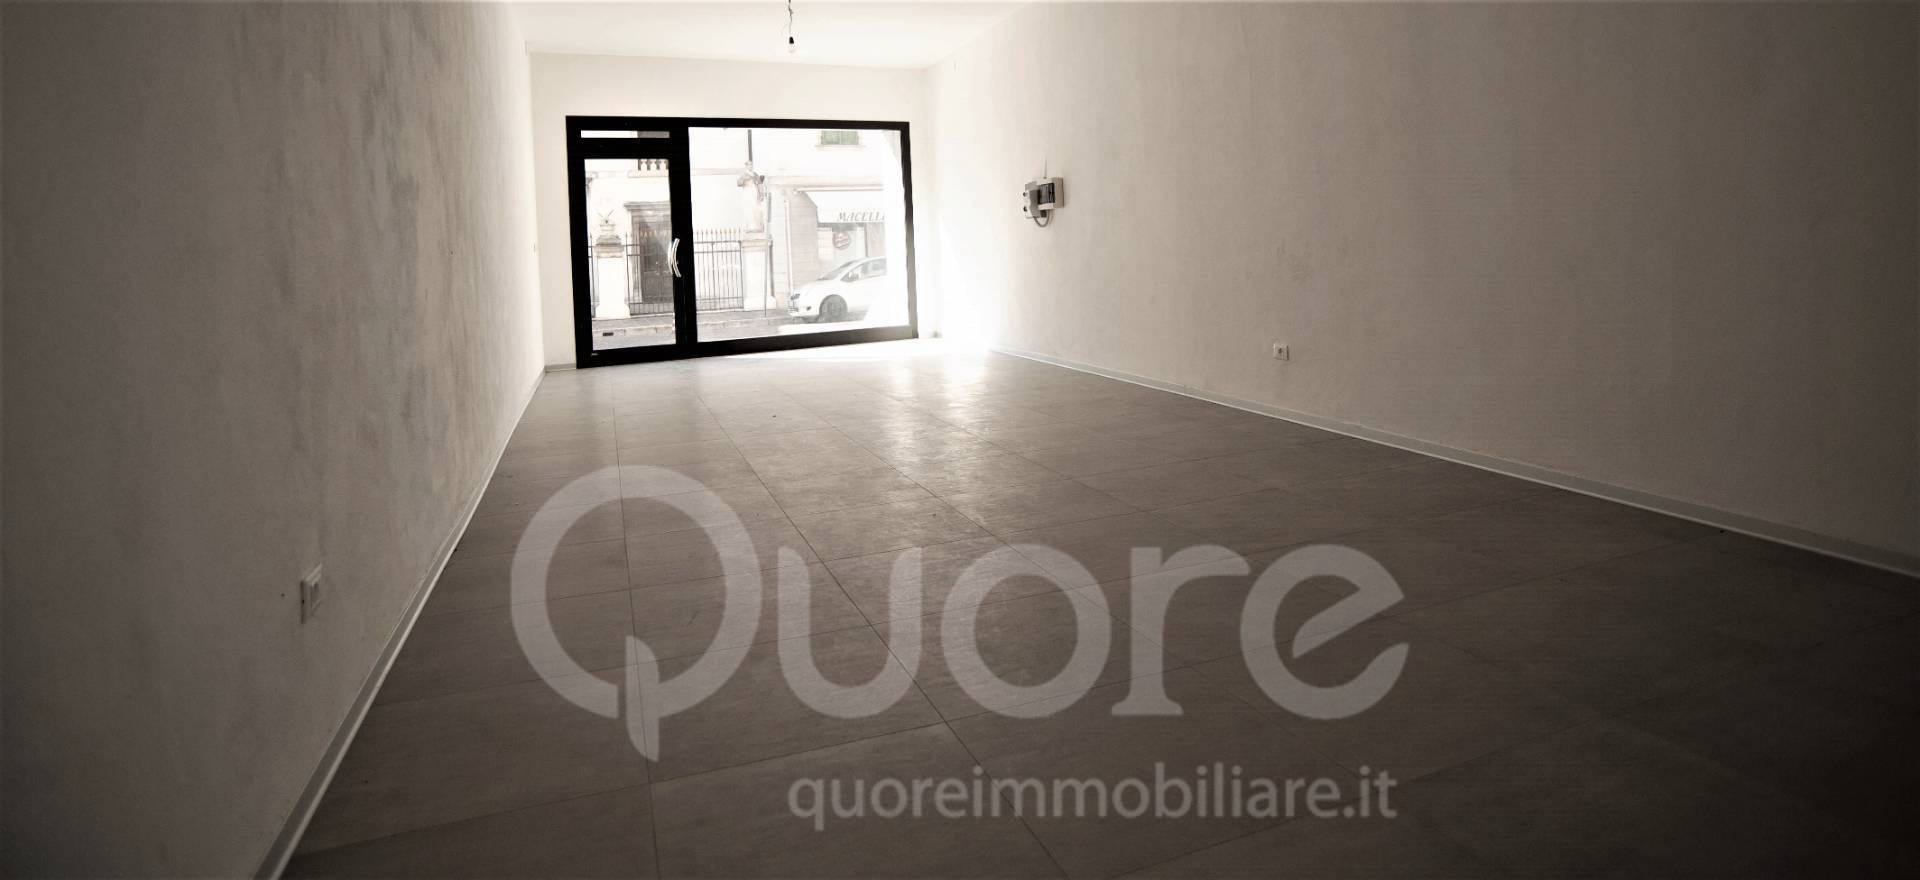 Negozio / Locale in affitto a Udine, 9999 locali, zona Zona: Semicentro, prezzo € 900 | CambioCasa.it